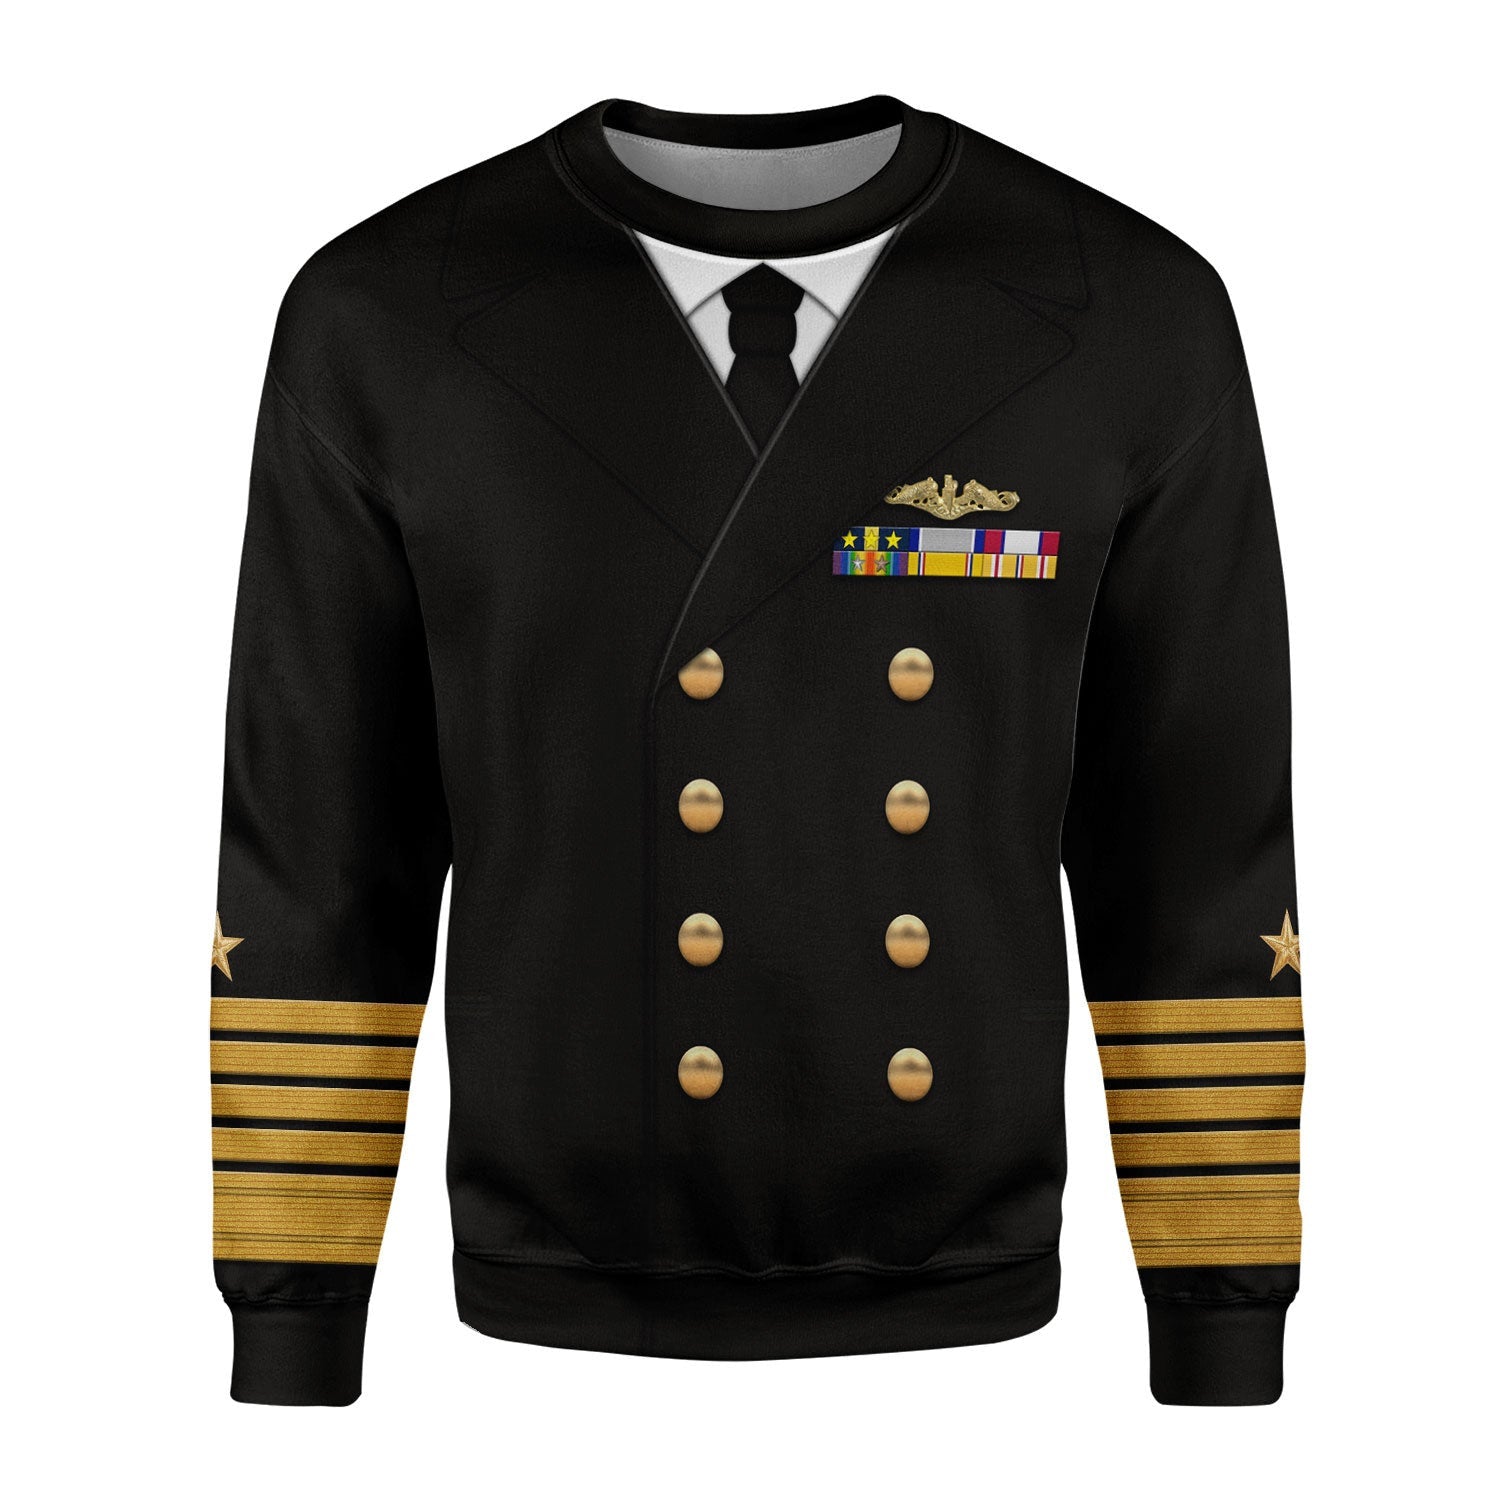 Gearhomie Admiral Chester W. Nimitz Uniform sweatshirt